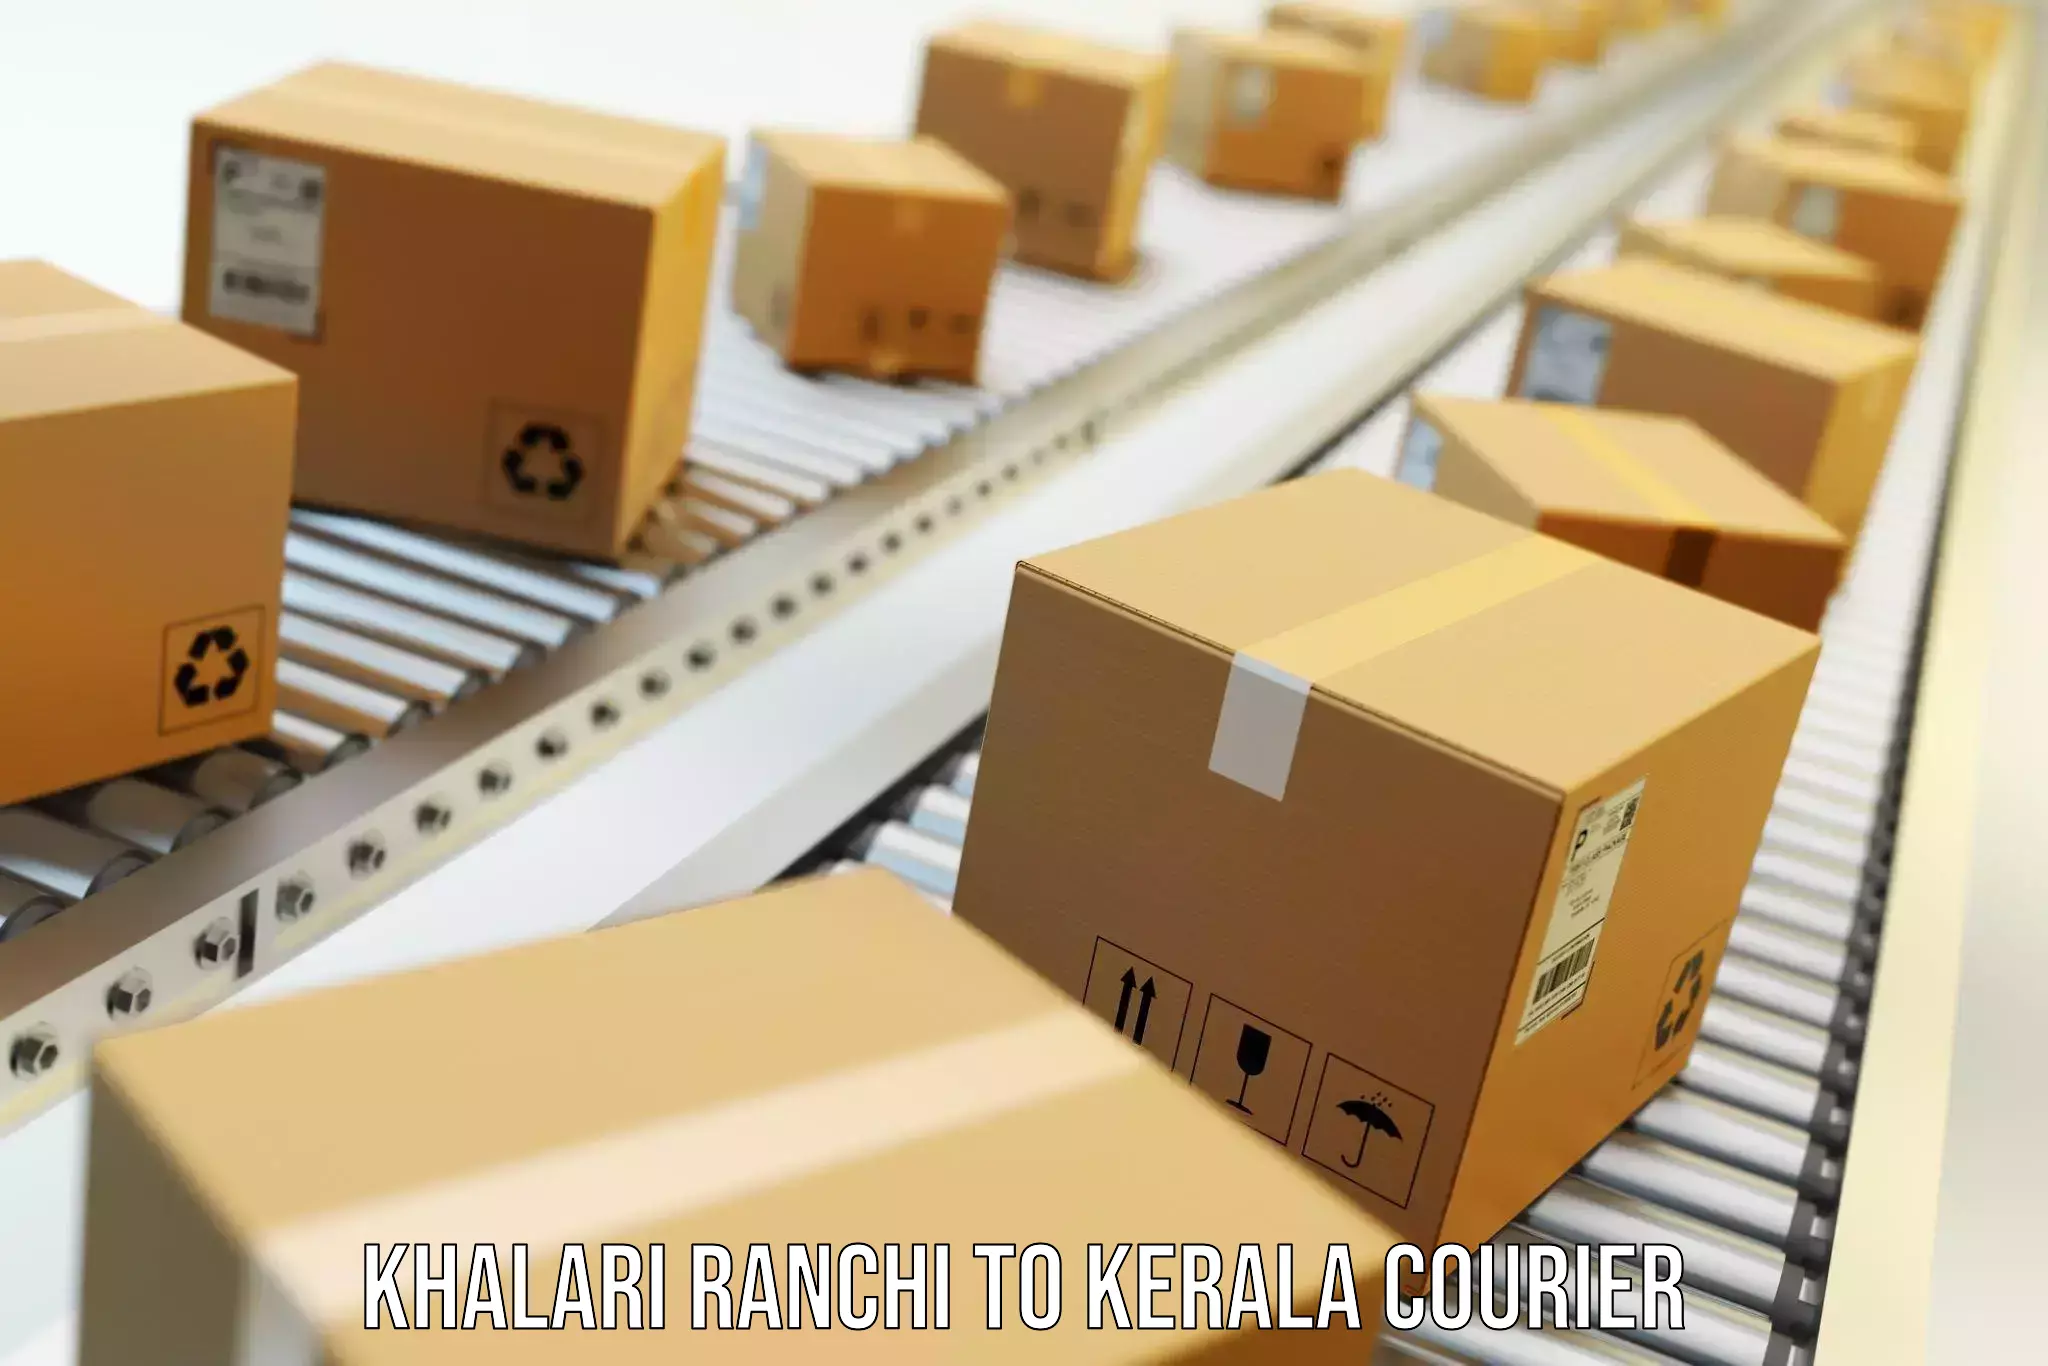 Furniture transport and storage in Khalari Ranchi to Kerala